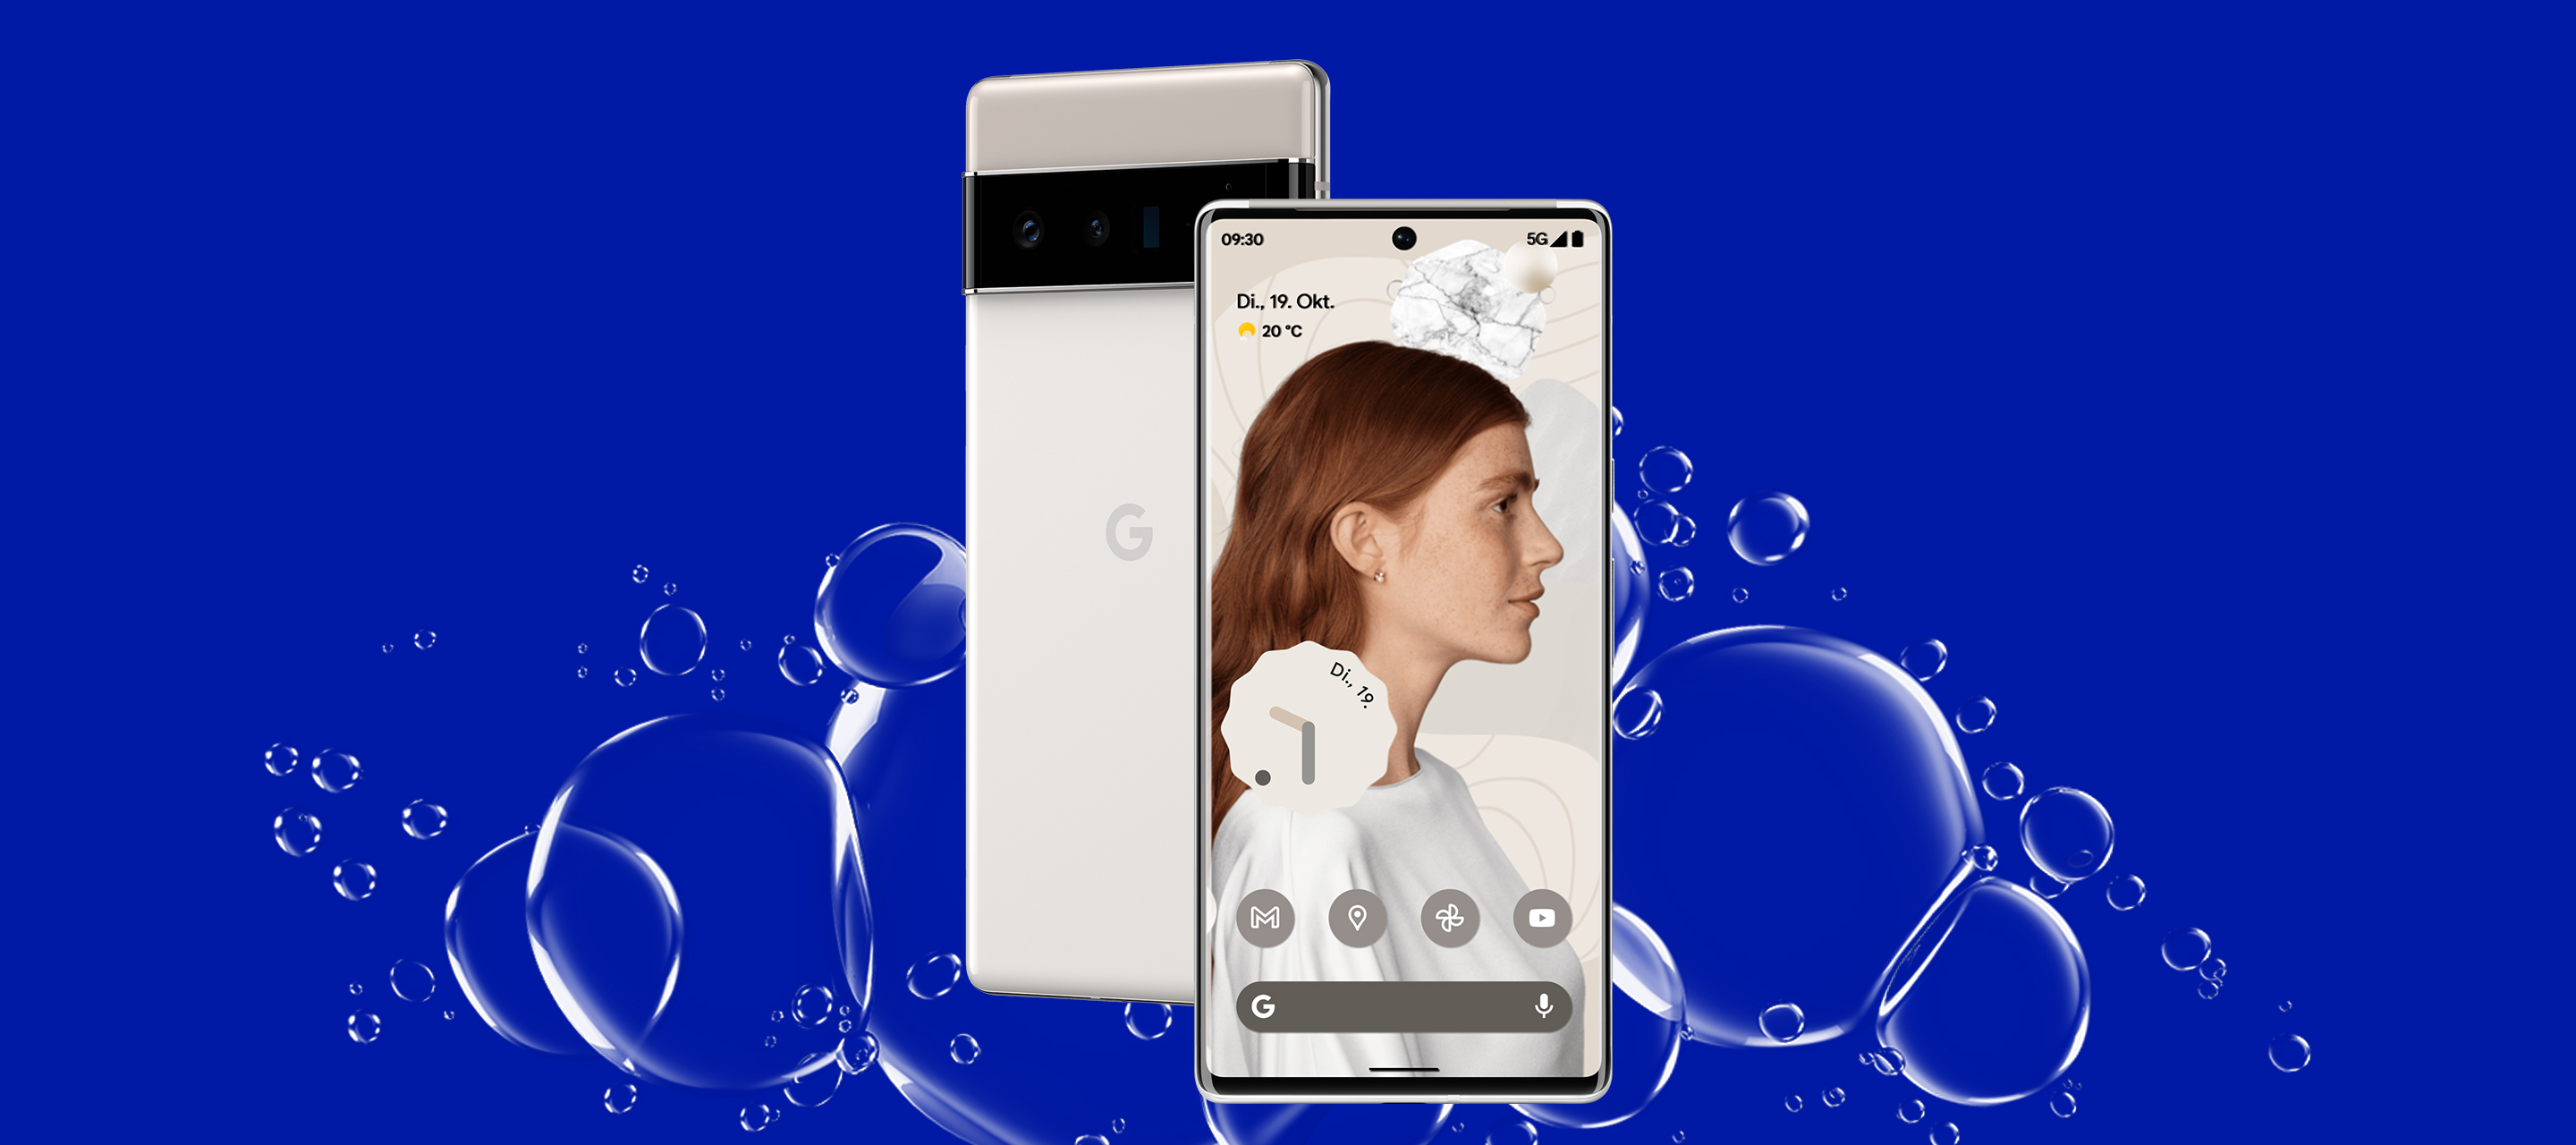 Das Pixel 6 und das Pixel 6 Pro - Neue Smartphones von Google jetzt bei O₂